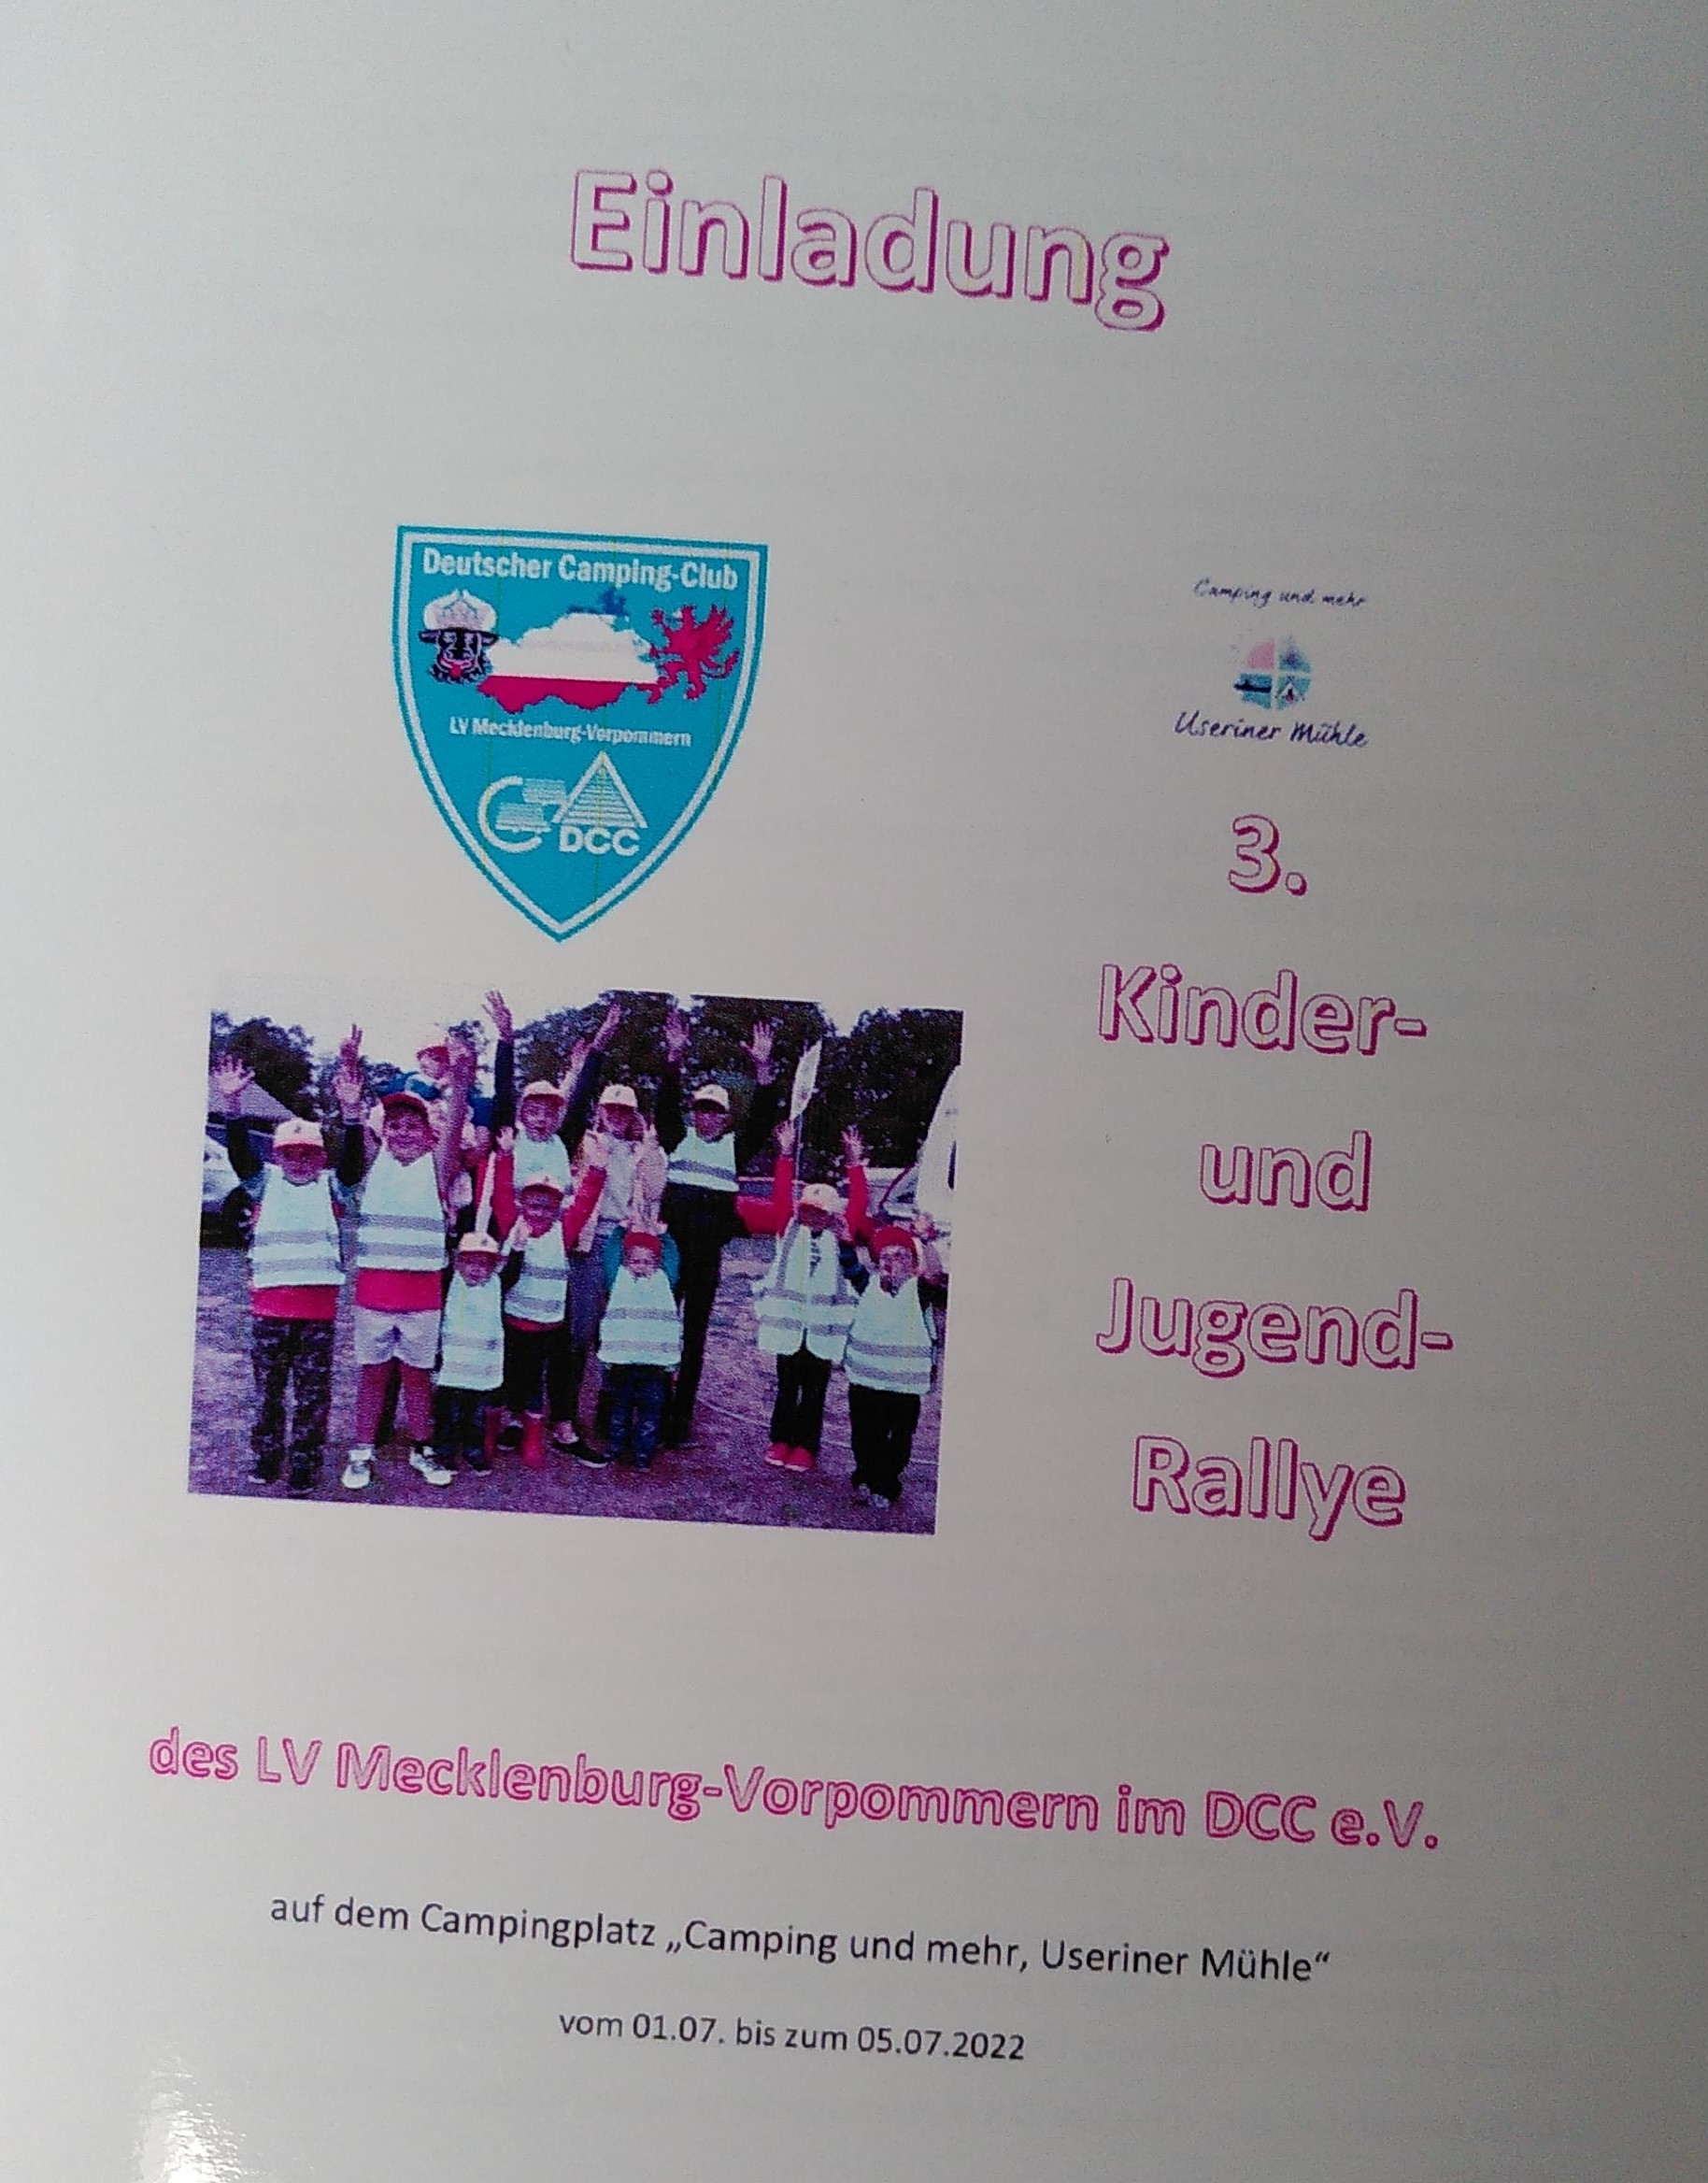 3. Kinder- und Jugendrallye des Lv Mecklenburg-Vorpommern